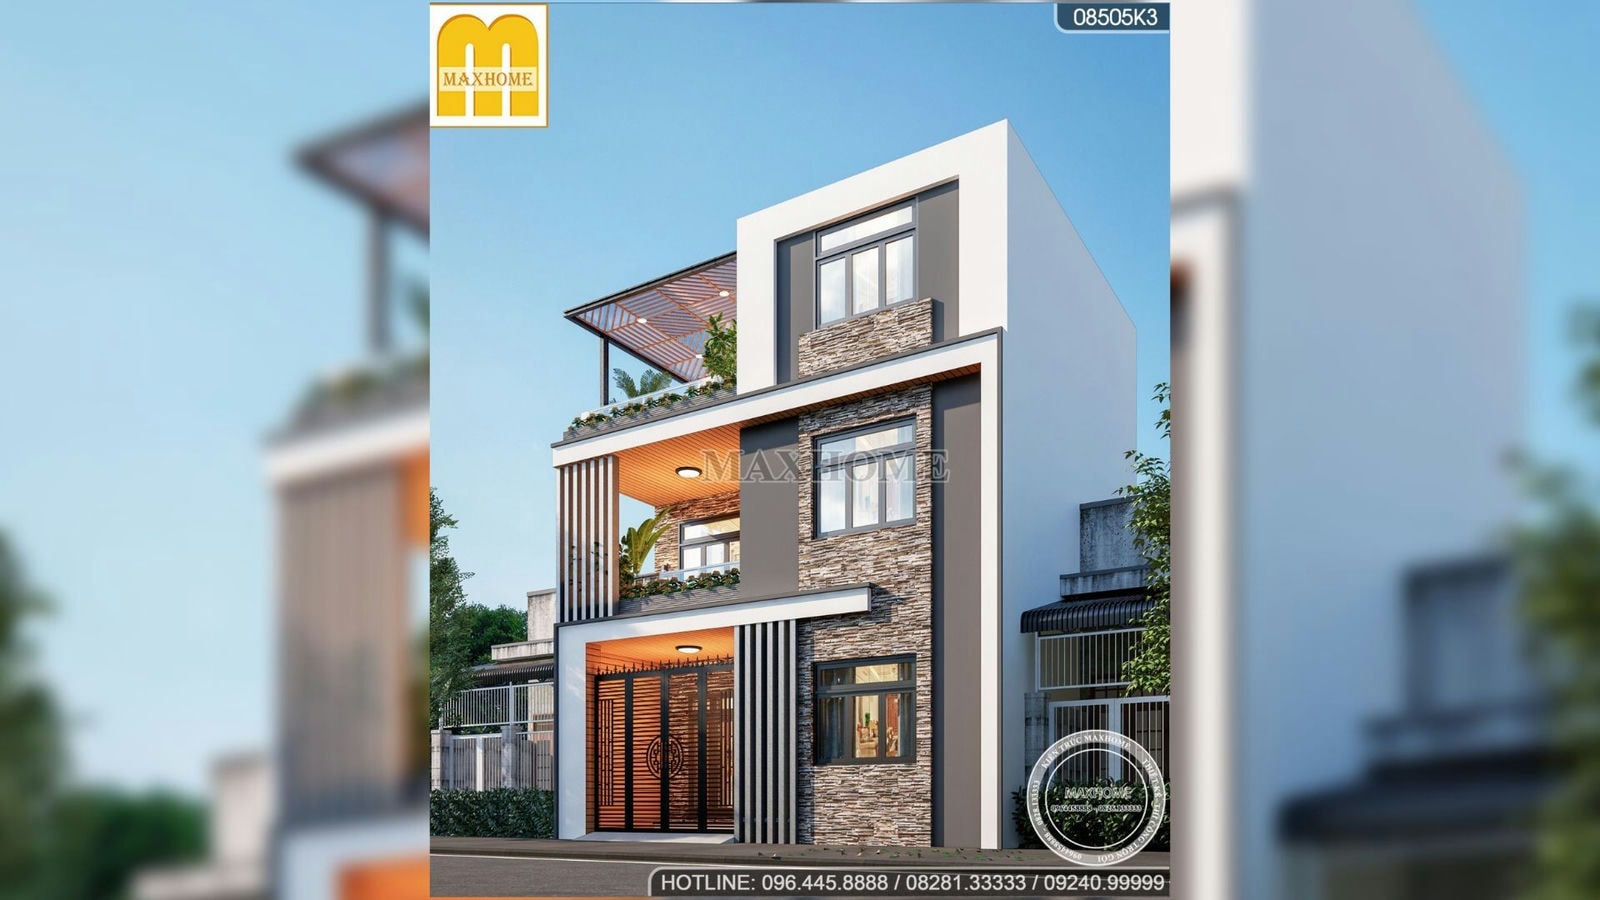 Thiết kế nhà hiện đại 3 tầng TIỆN NGHI, SANG TRỌNG ai nhìn cũng mê | MH02056